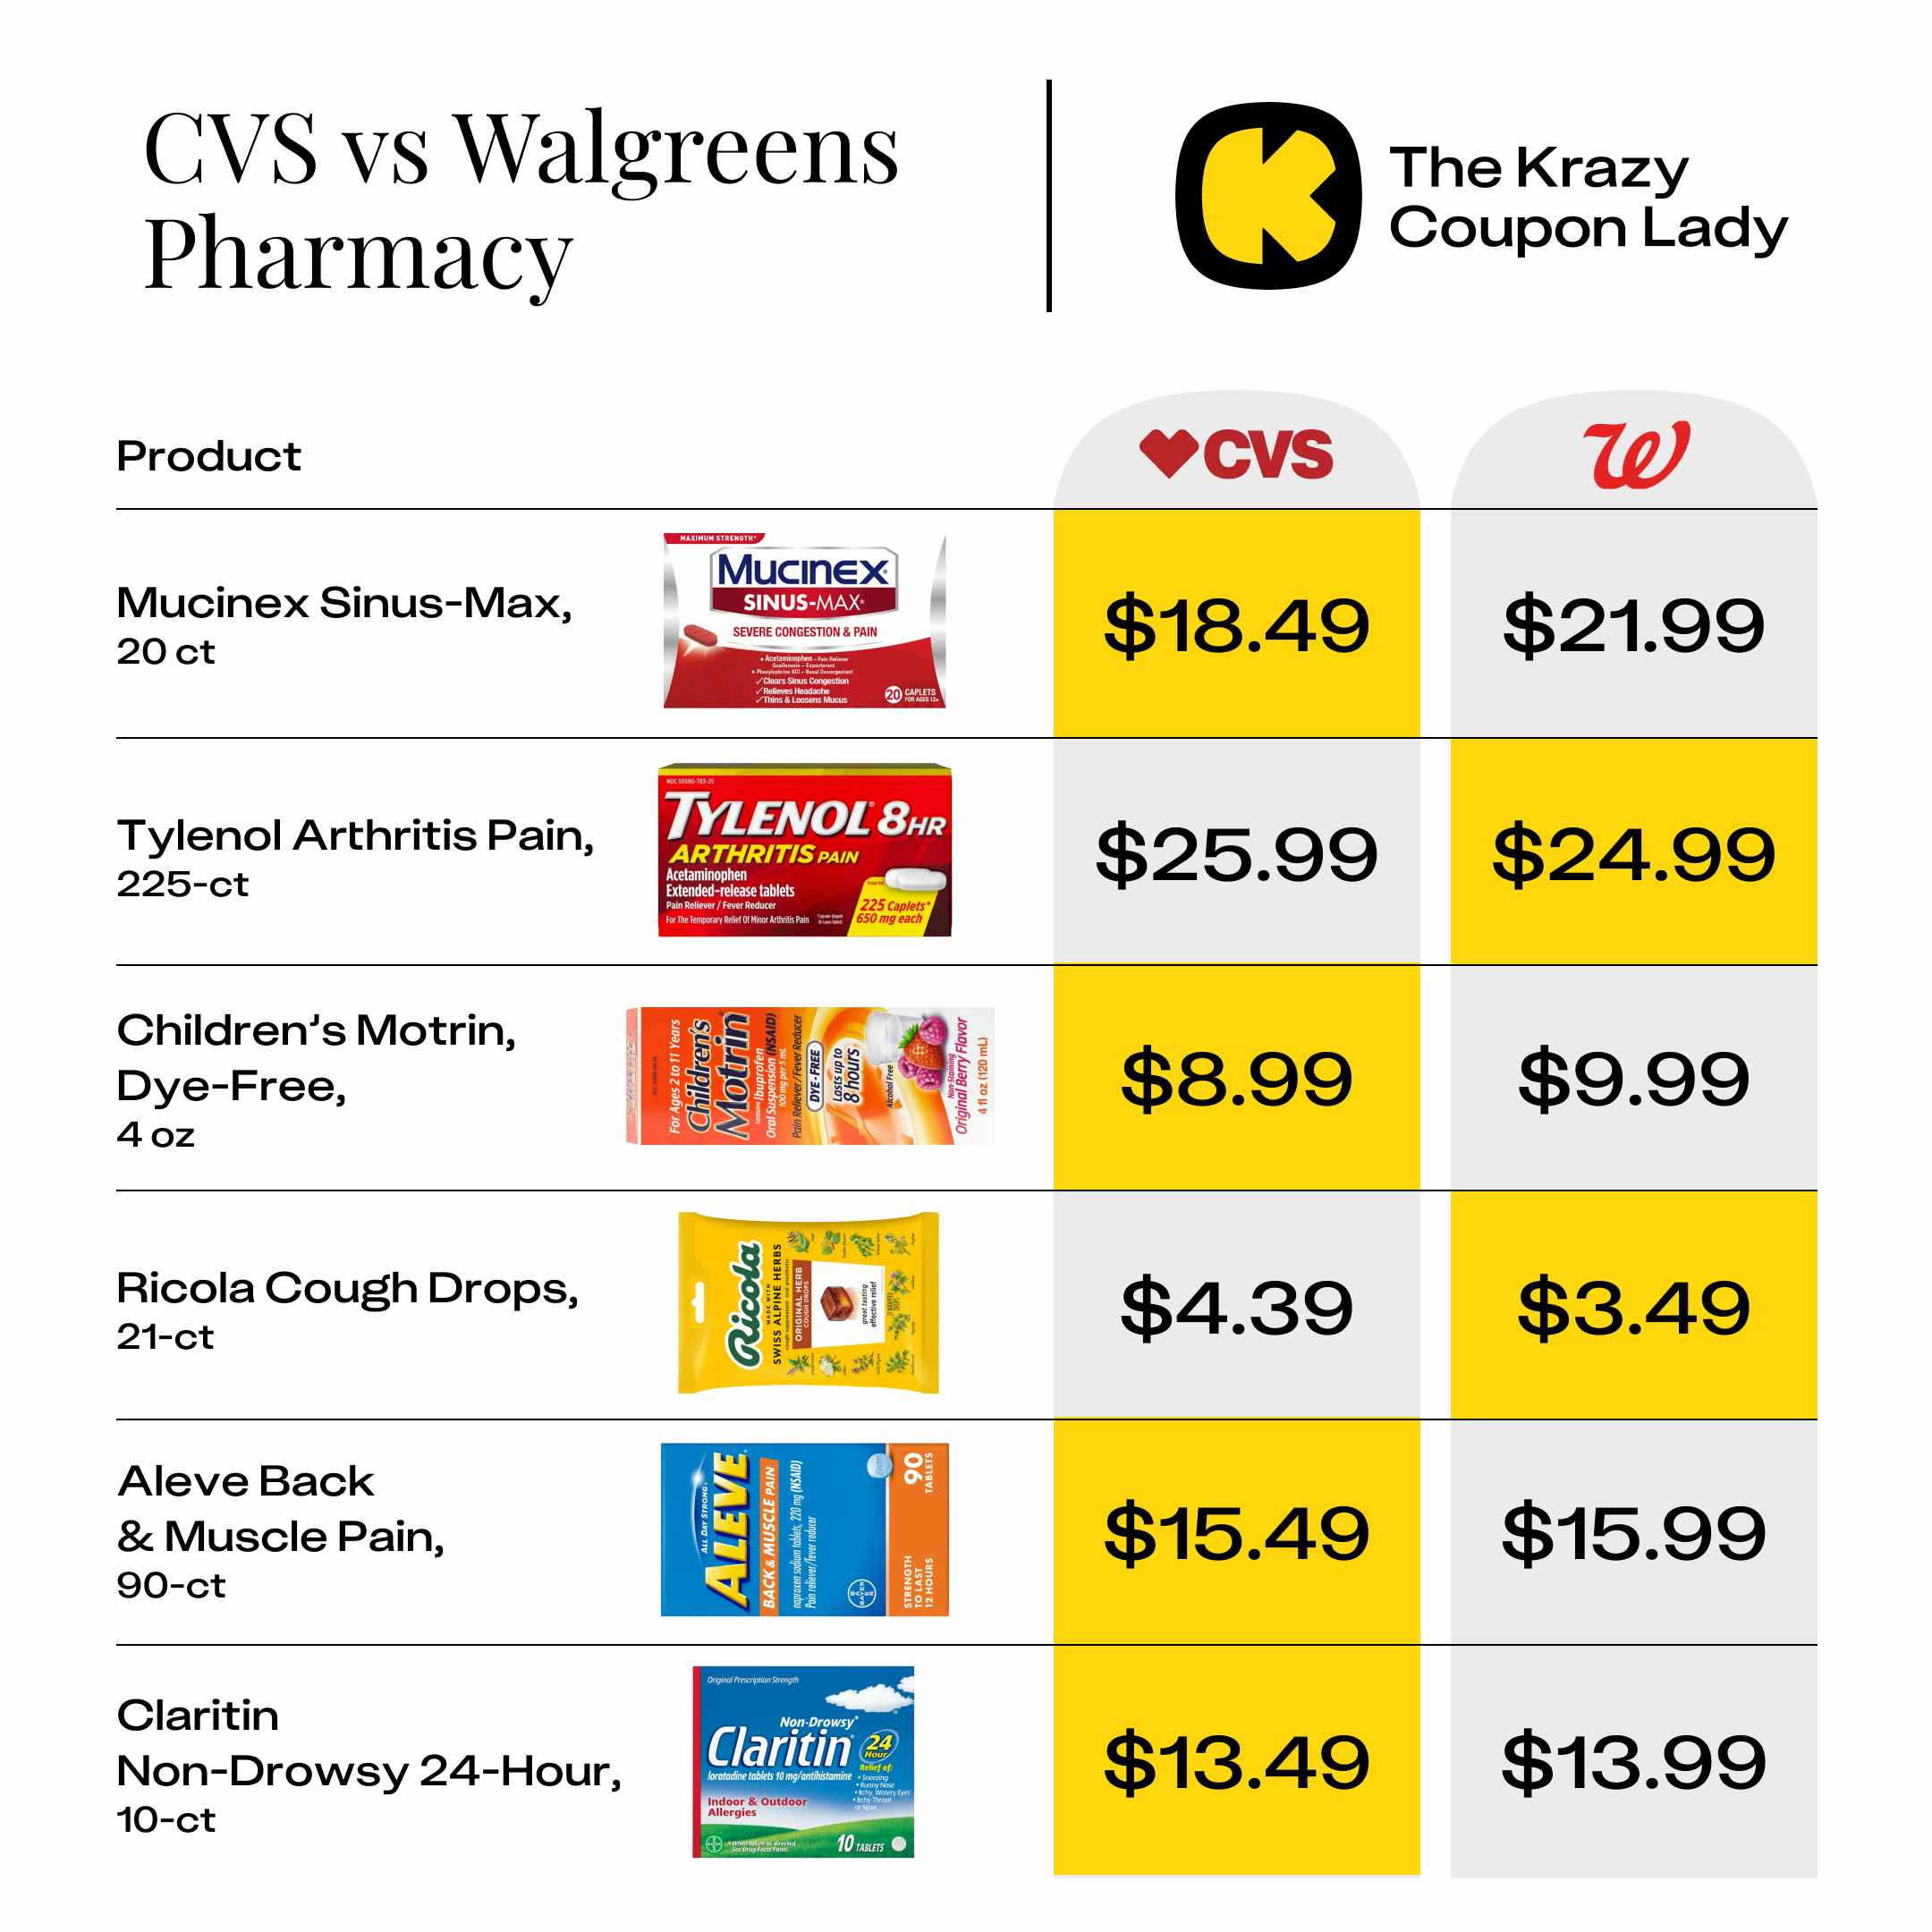 CVS vs Walgreens Pharmacy Item Prices